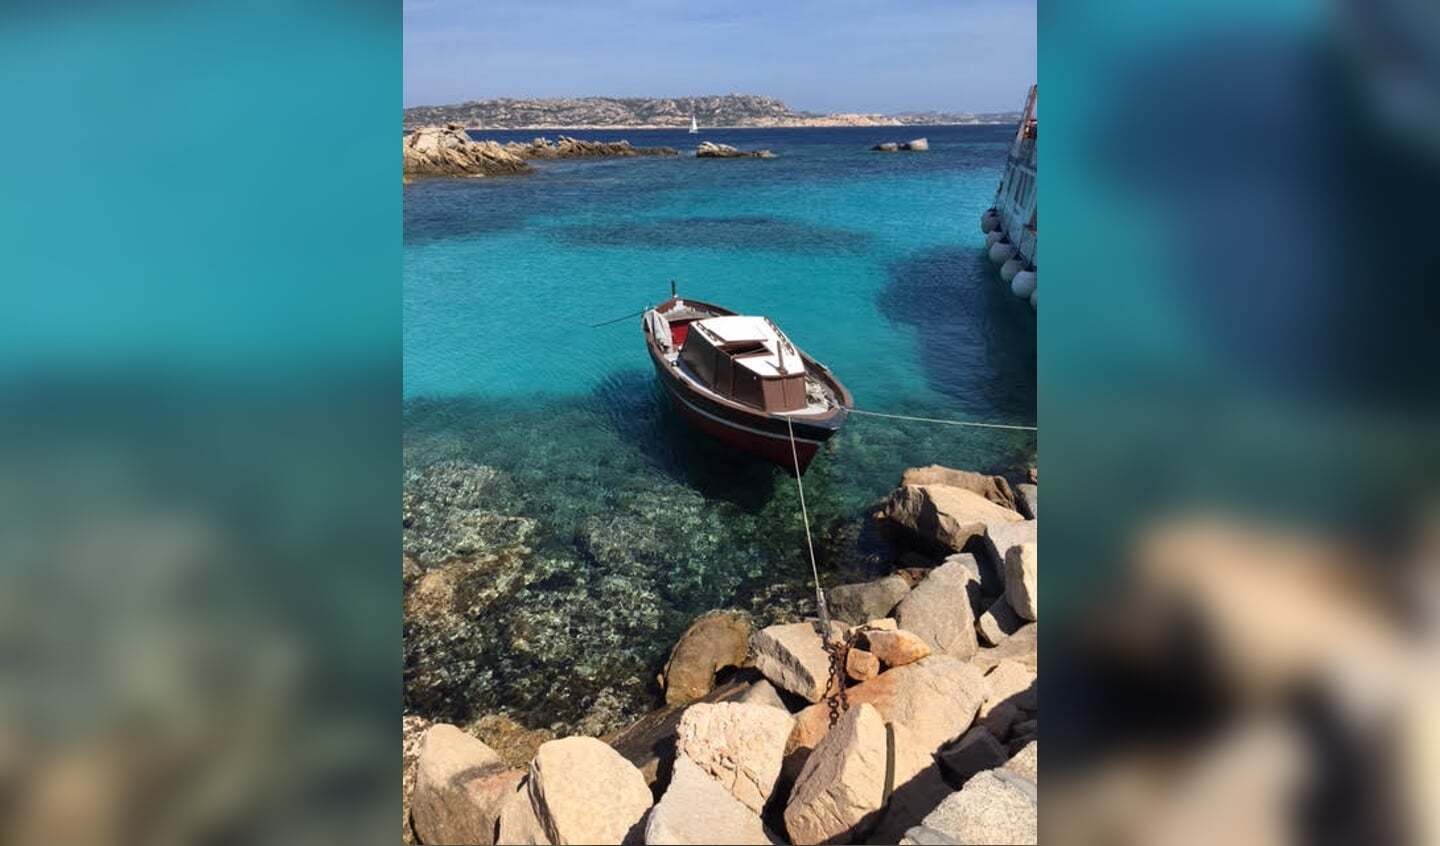 We waren 30 mei 2022 op Sardinië en gingen met een boot de eilandjes in de buurt bezoeken. Bij een van die eilandjes, la Maddalena, lag dit bootje. Fantastisch!